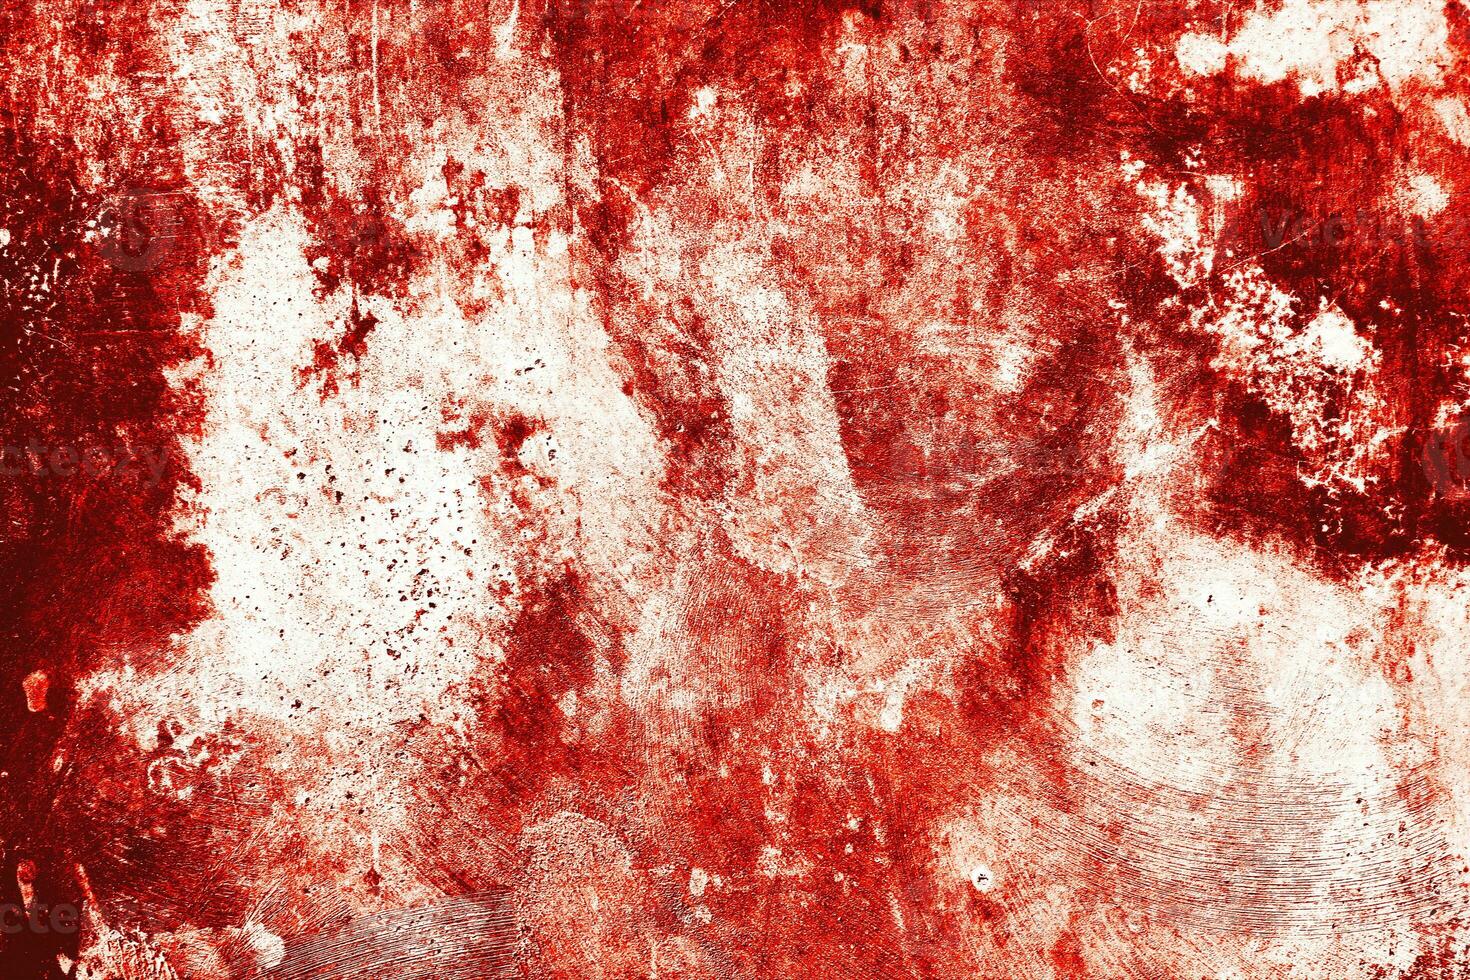 buio rosso sangue su vecchio parete per Halloween concetto foto